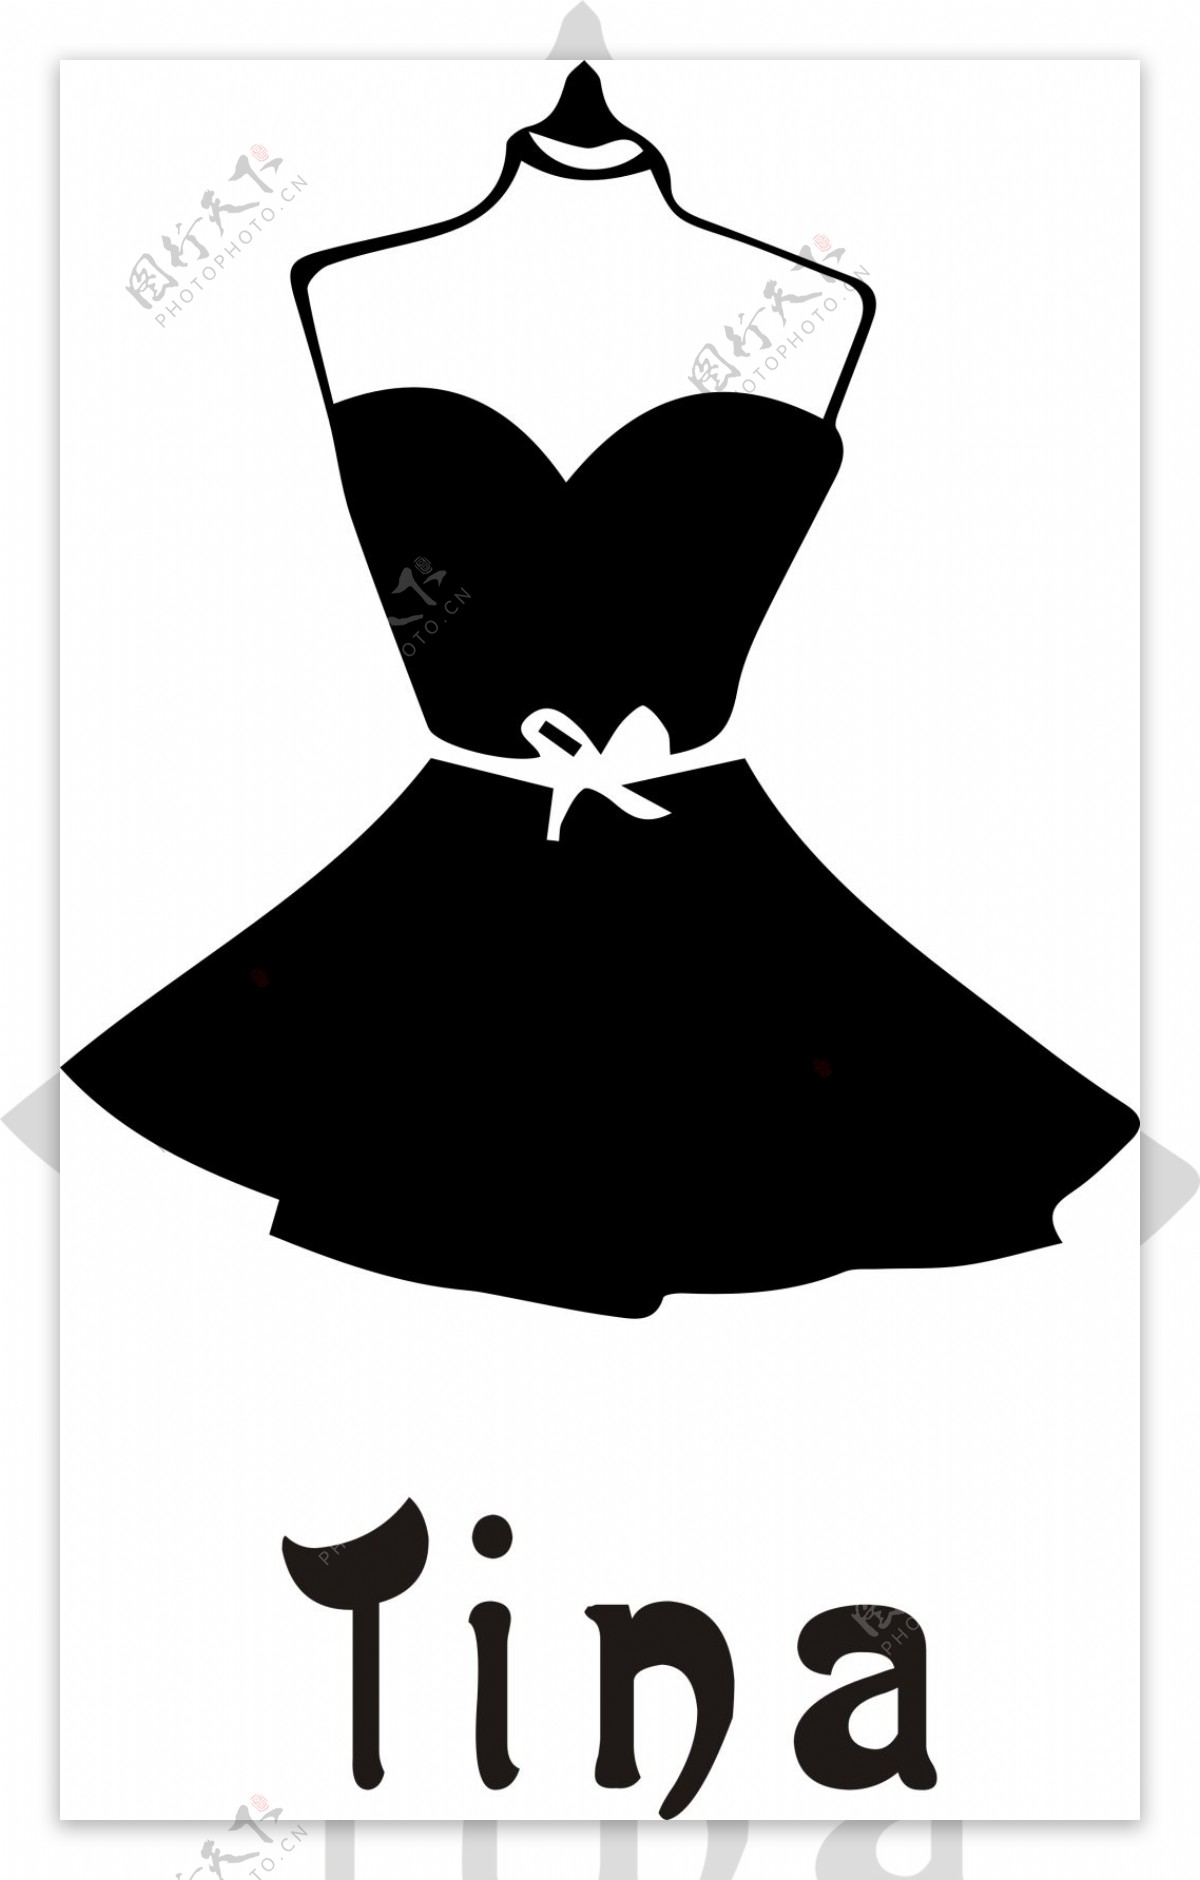 小裙子logo衣服tina